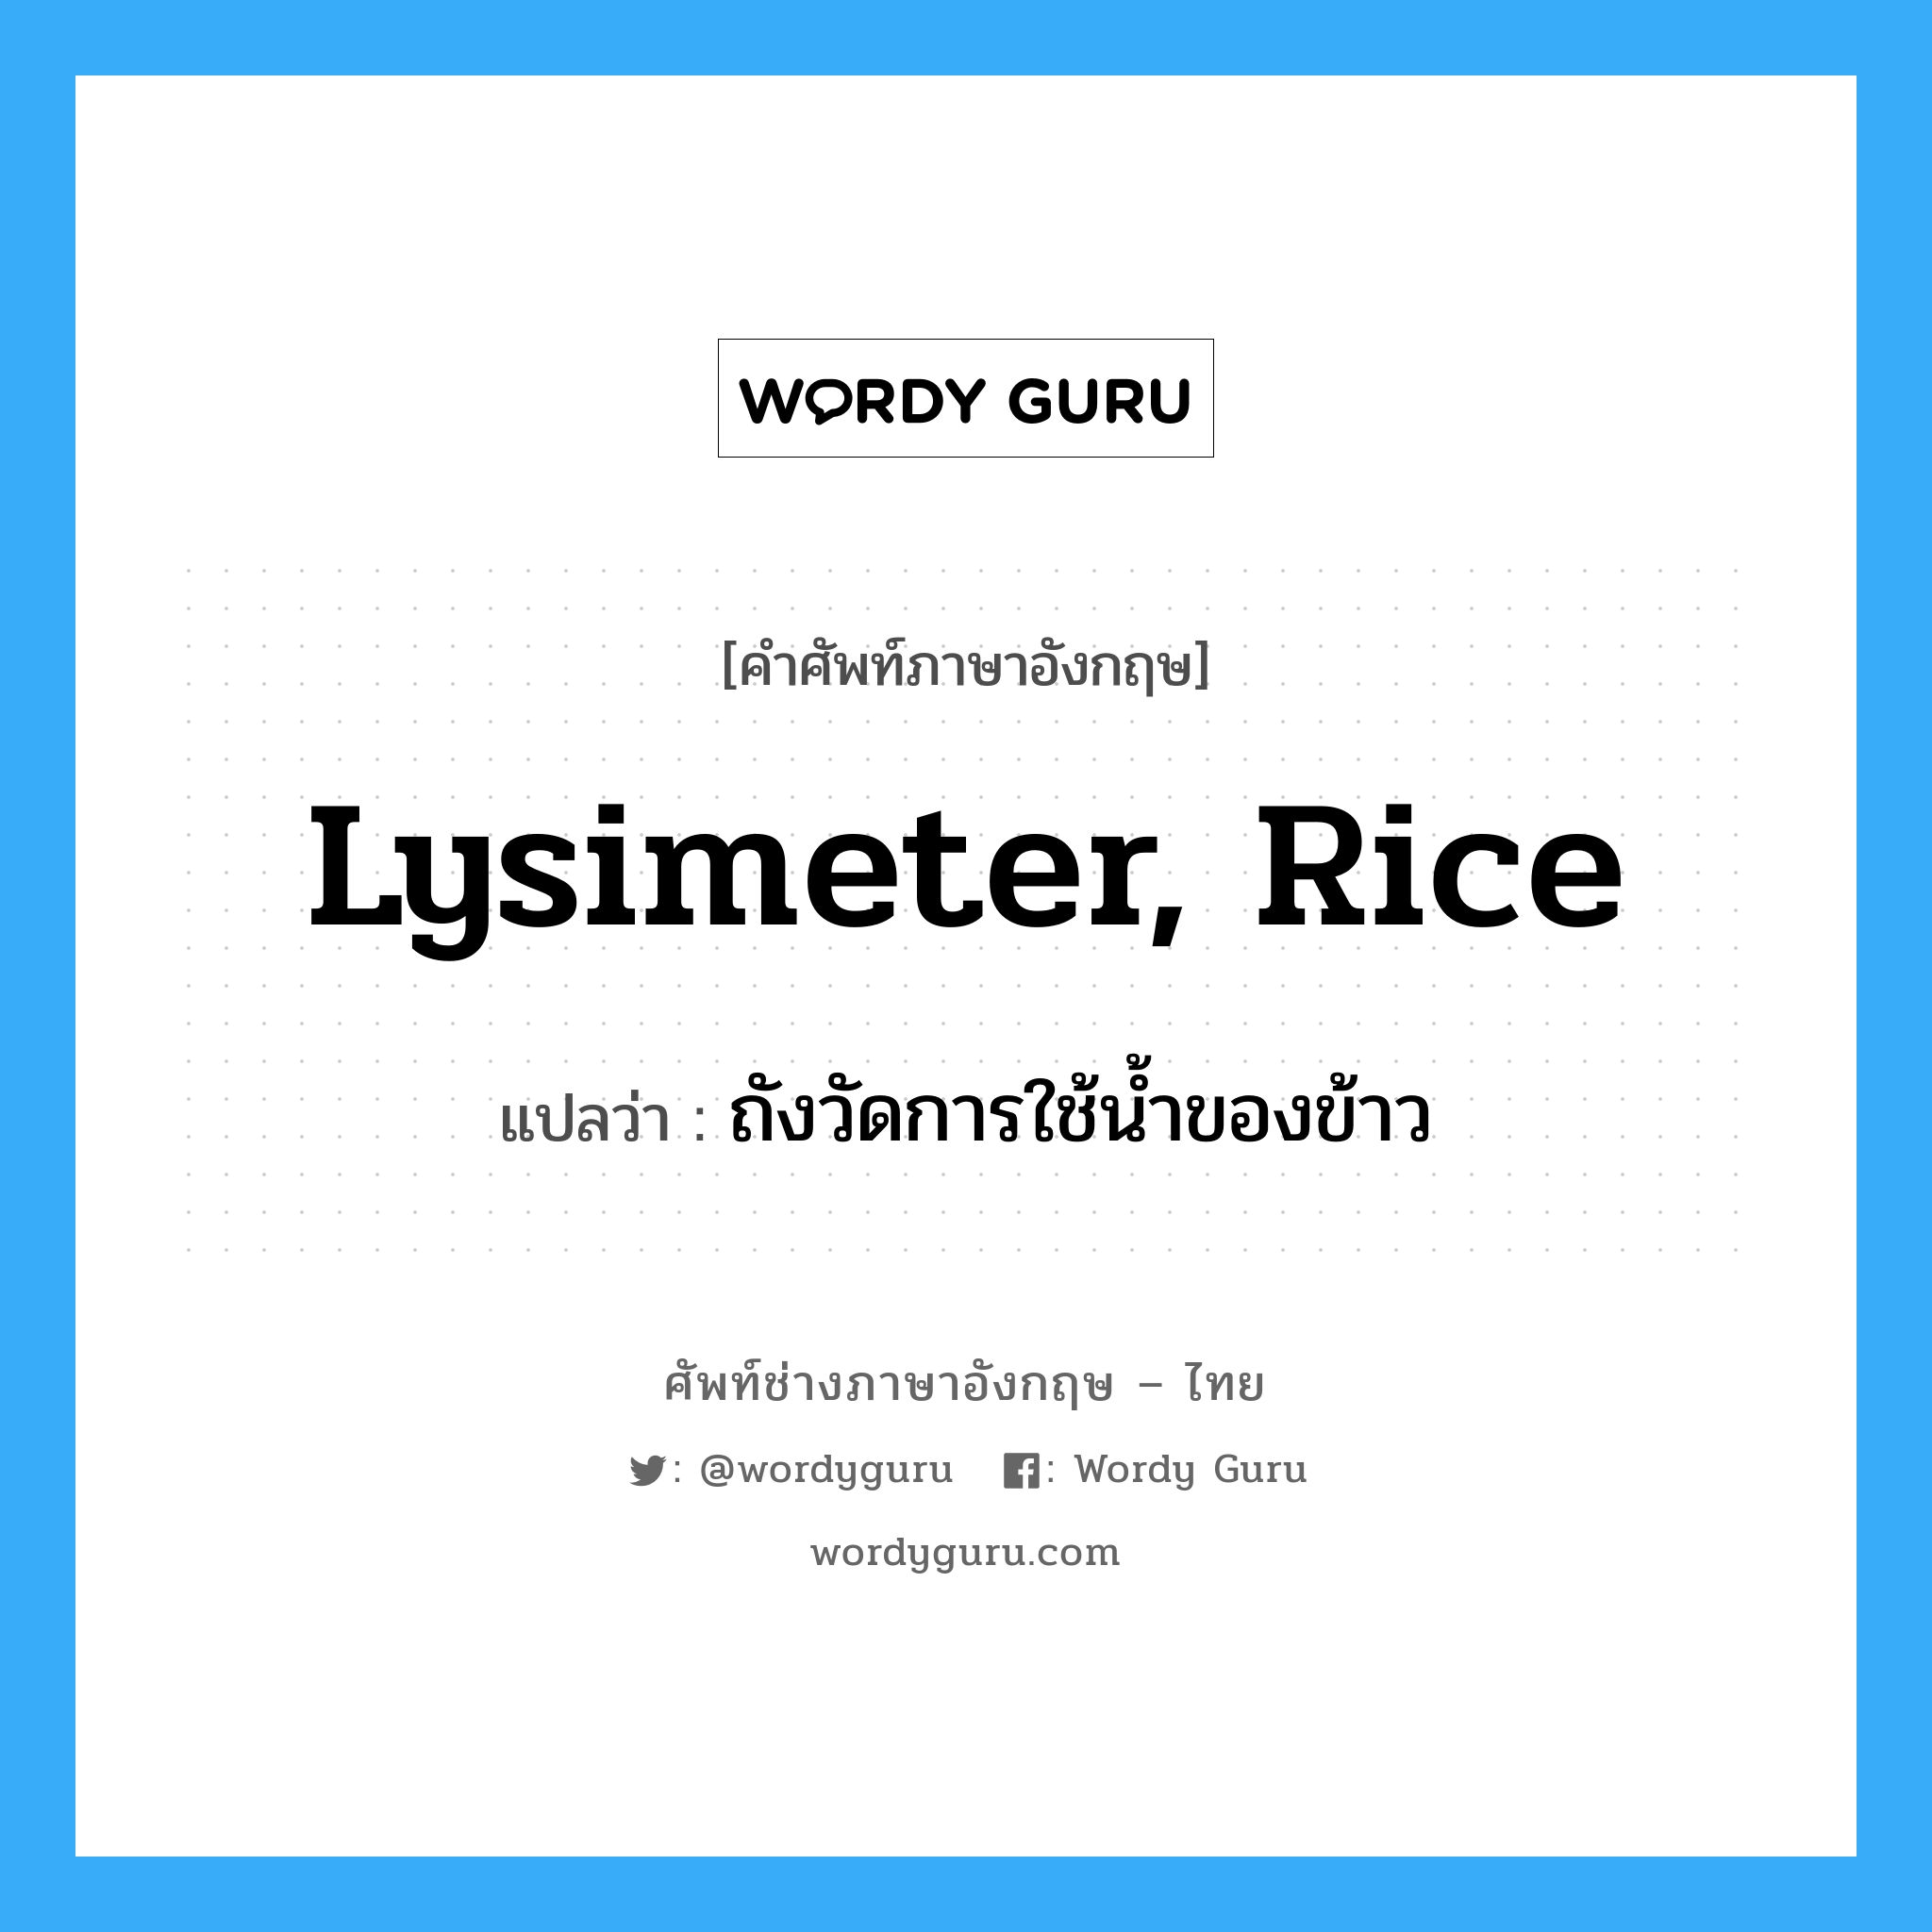 lysimeter, rice แปลว่า?, คำศัพท์ช่างภาษาอังกฤษ - ไทย lysimeter, rice คำศัพท์ภาษาอังกฤษ lysimeter, rice แปลว่า ถังวัดการใช้น้ำของข้าว